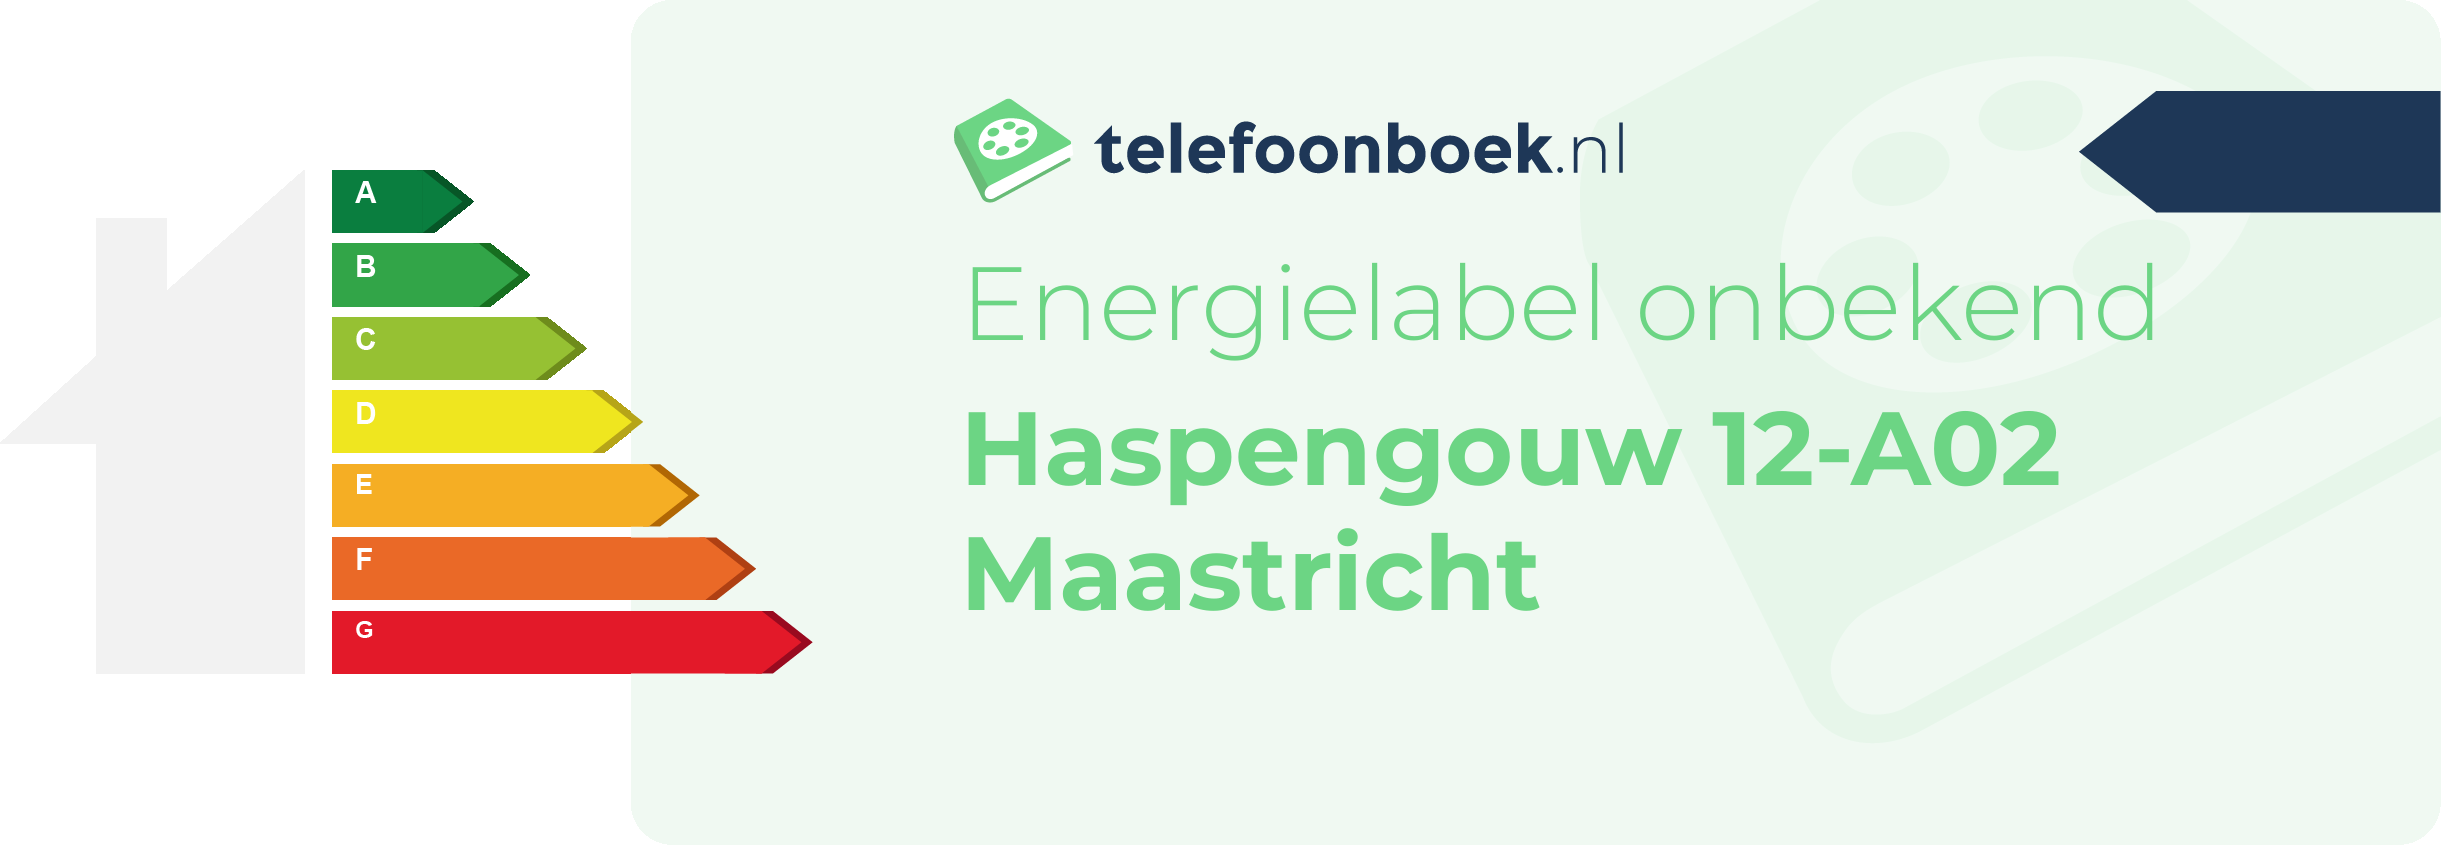 Energielabel Haspengouw 12-A02 Maastricht